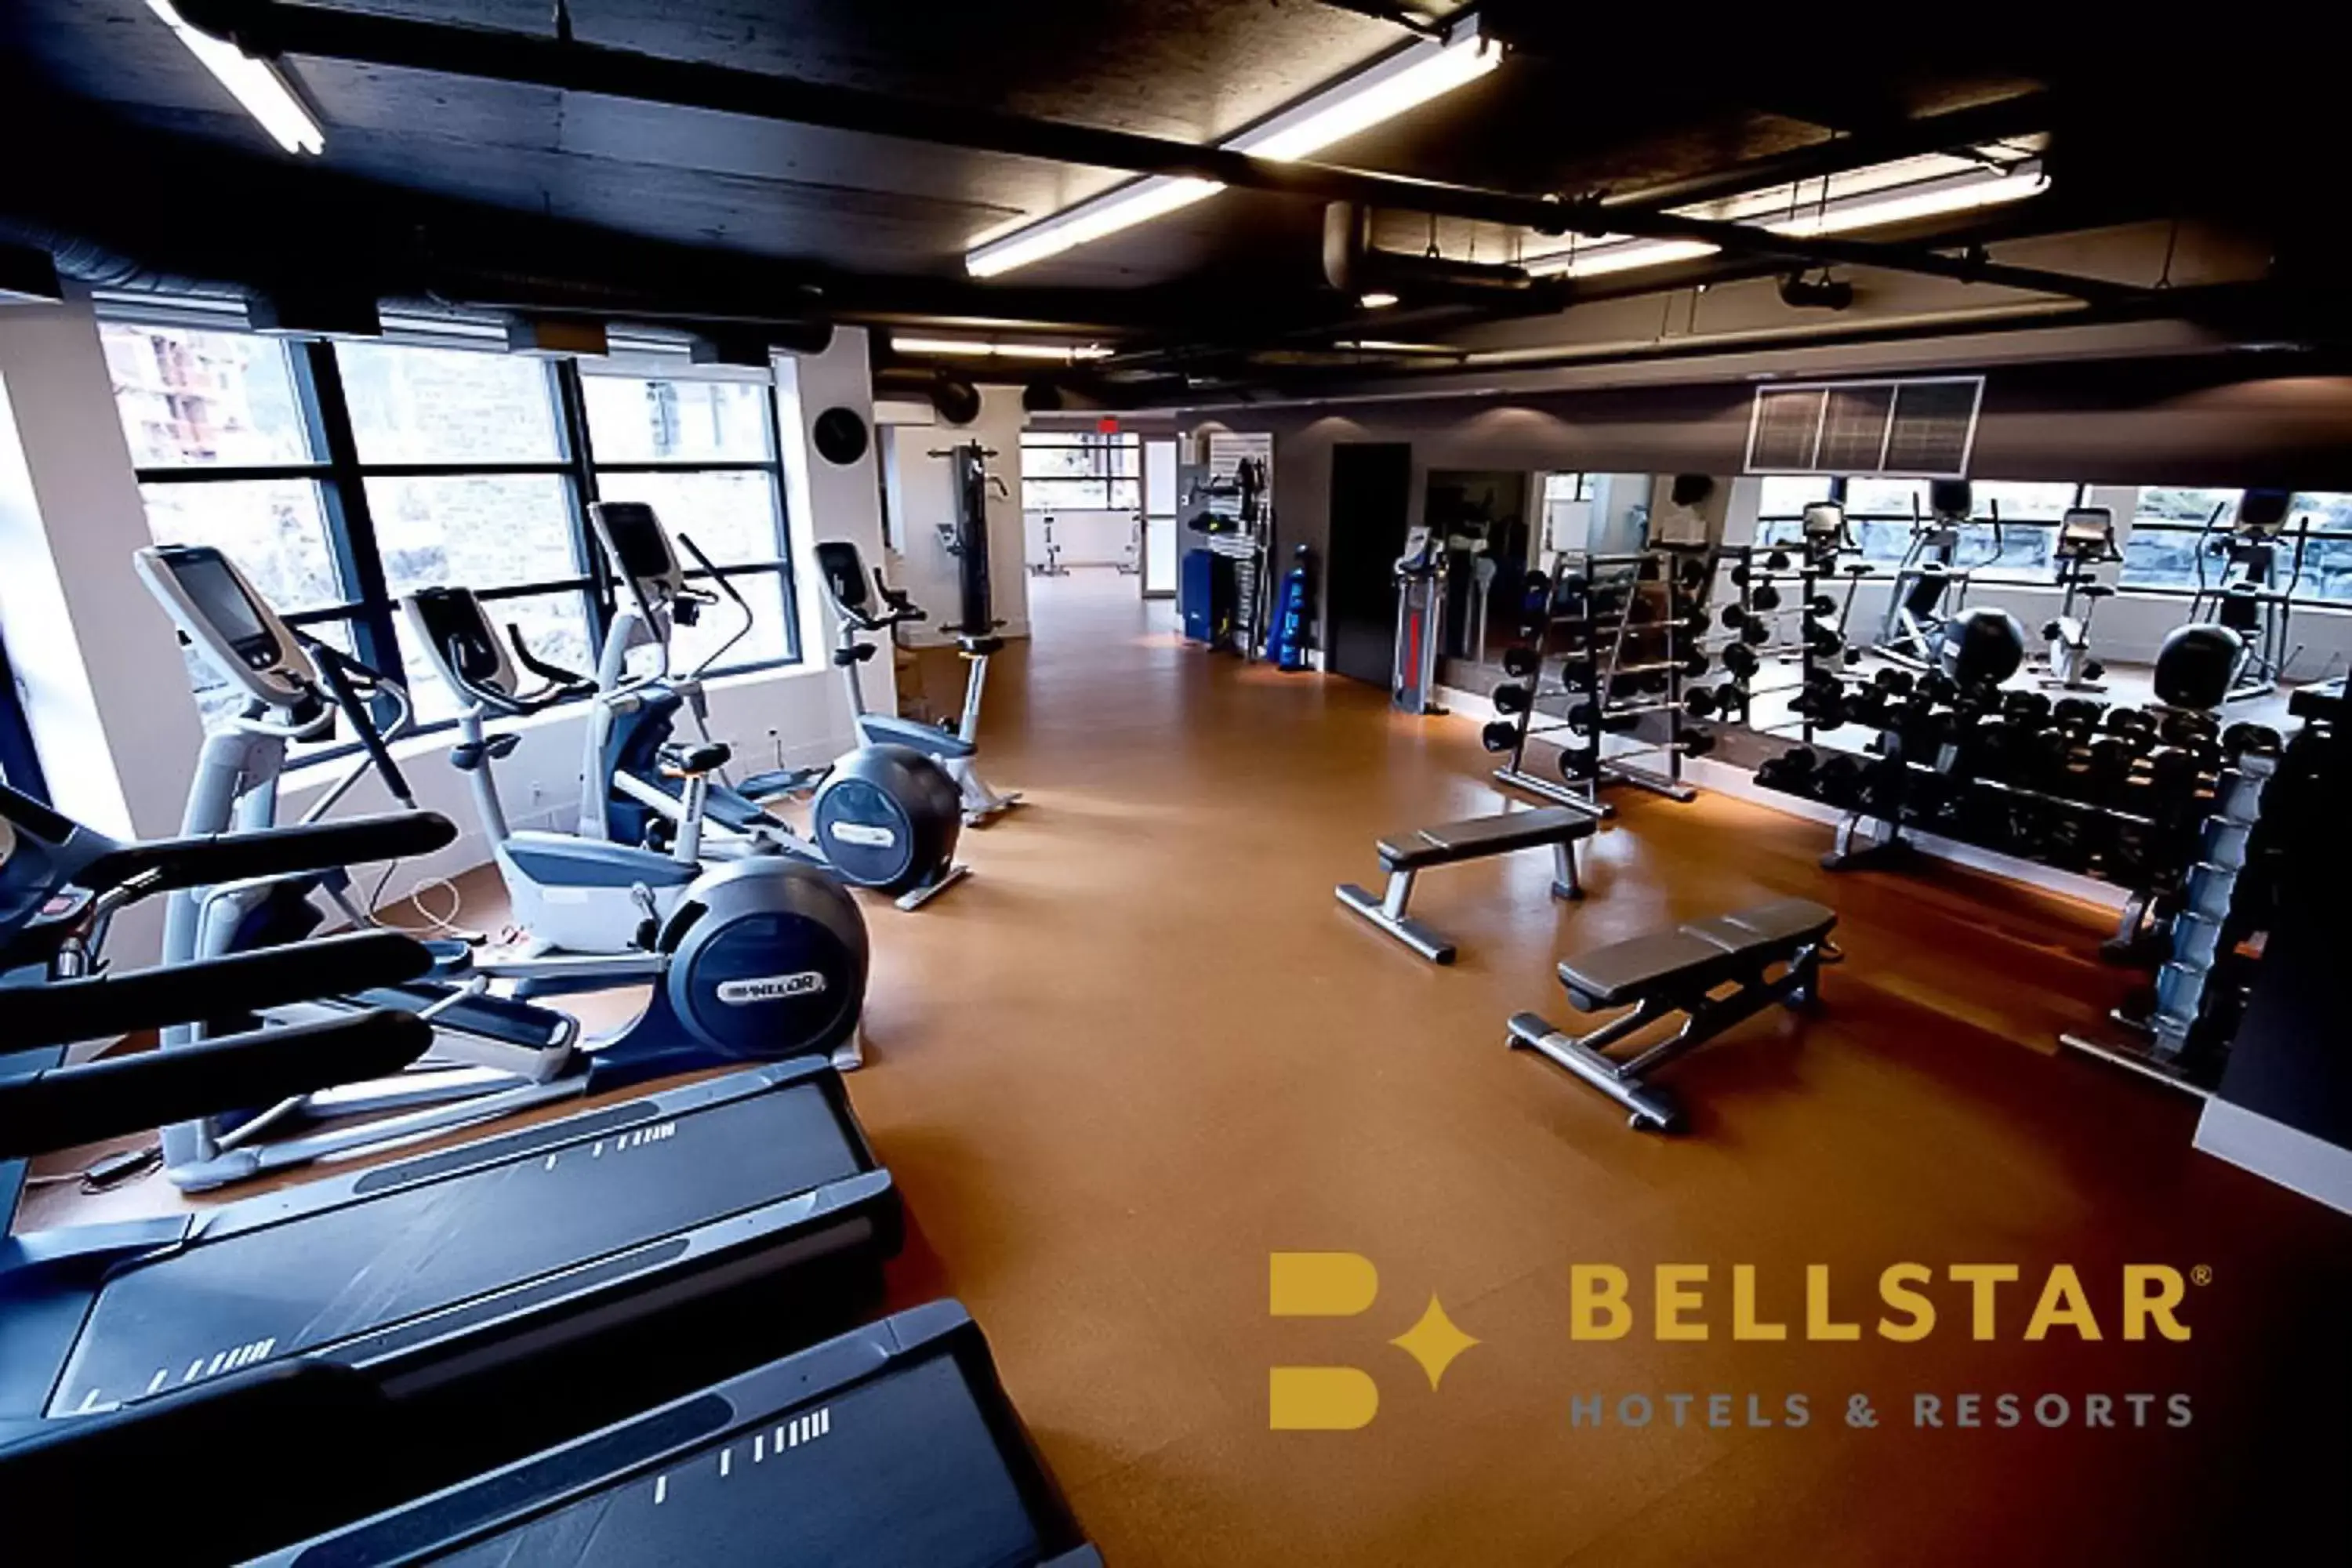 Fitness centre/facilities, Fitness Center/Facilities in Solara Resort by Bellstar Hotels